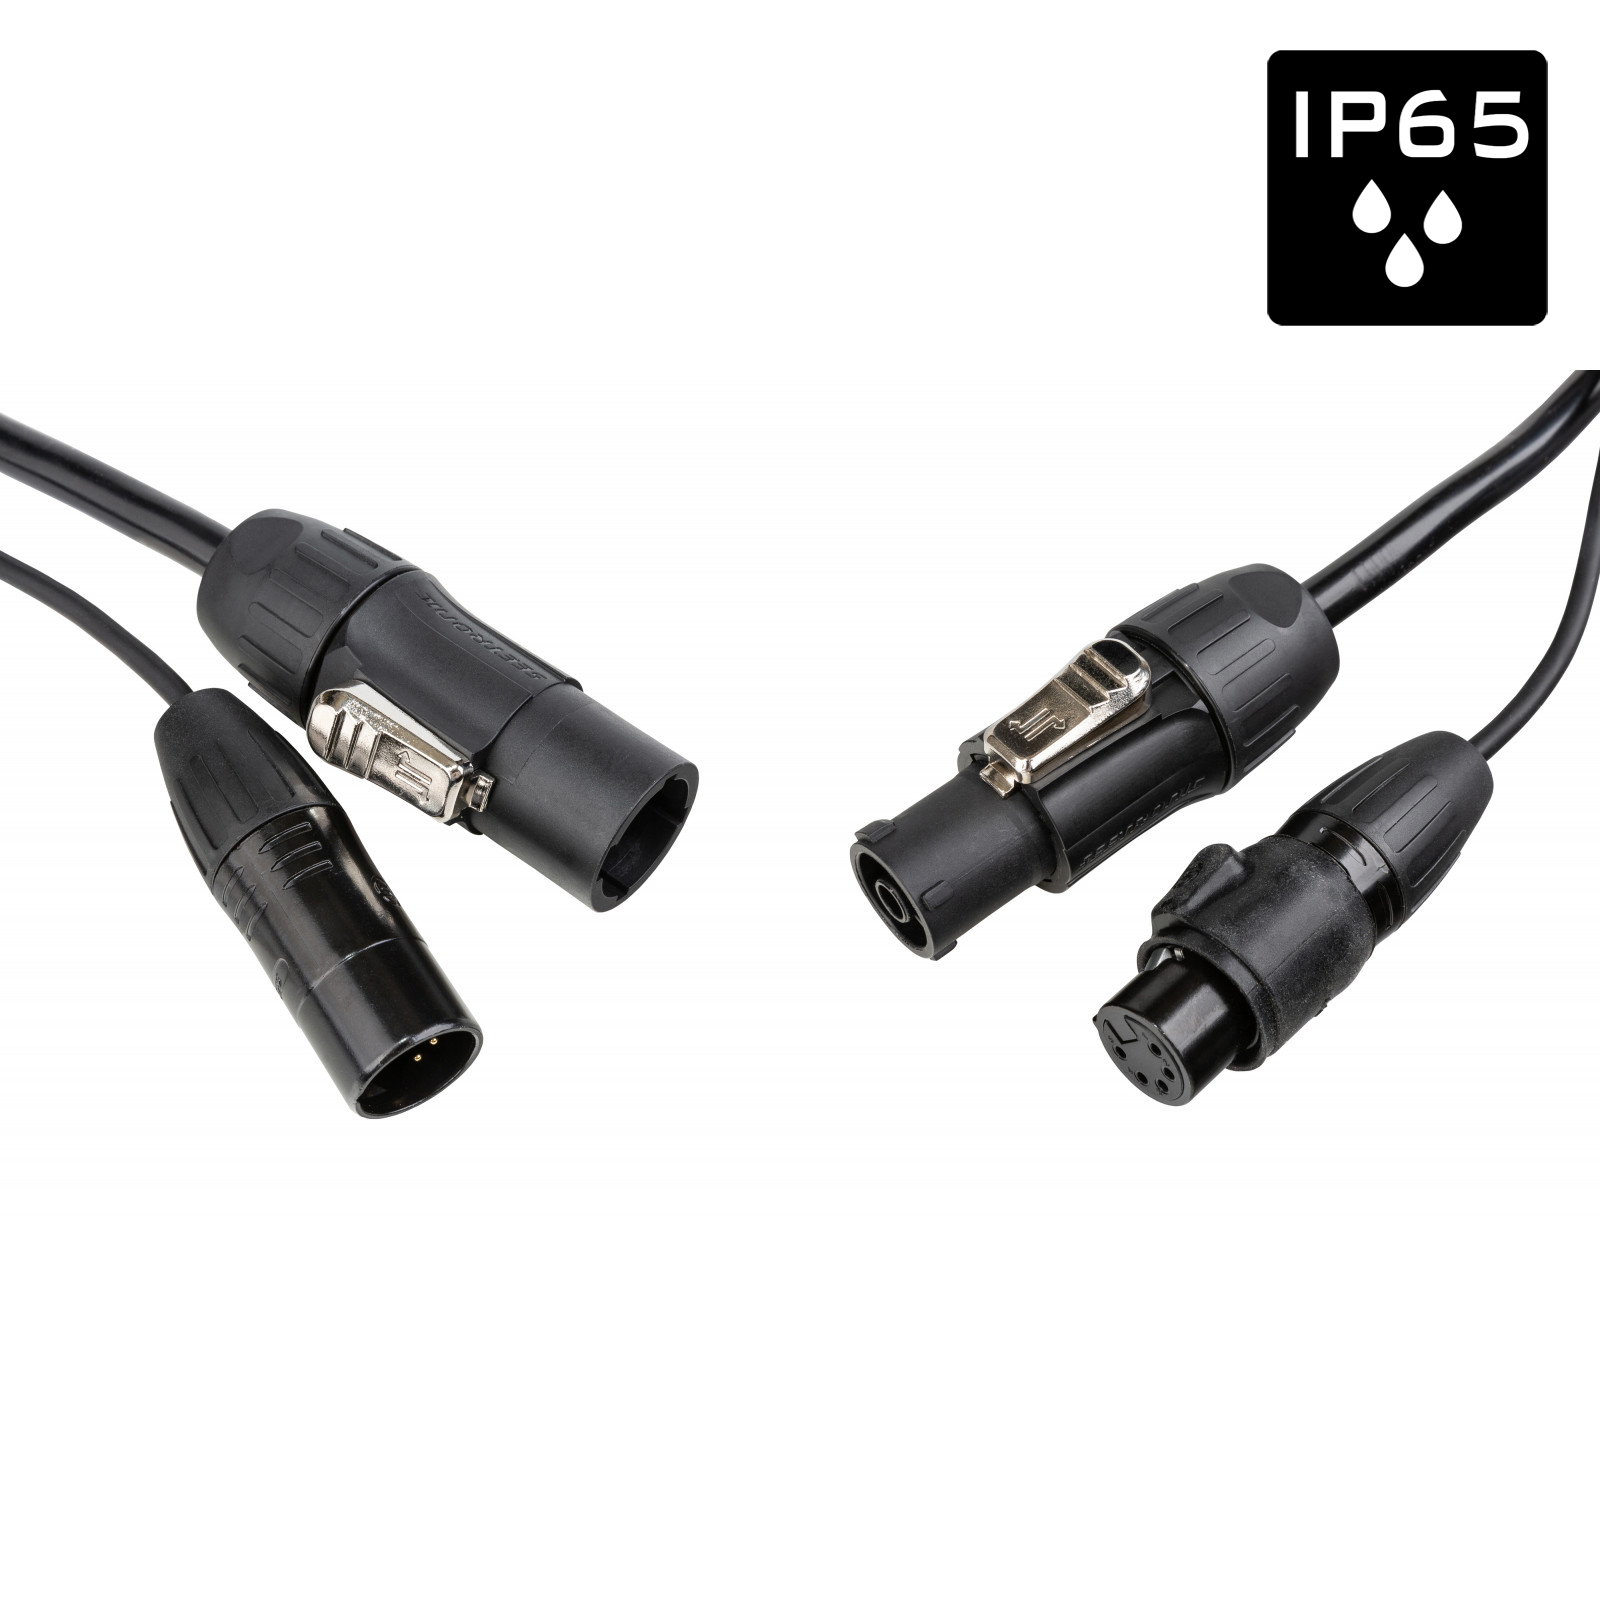 Câble IP65 avec connecteurs Seetronic XLR 5p et compatibles True1 - Longueur 3m